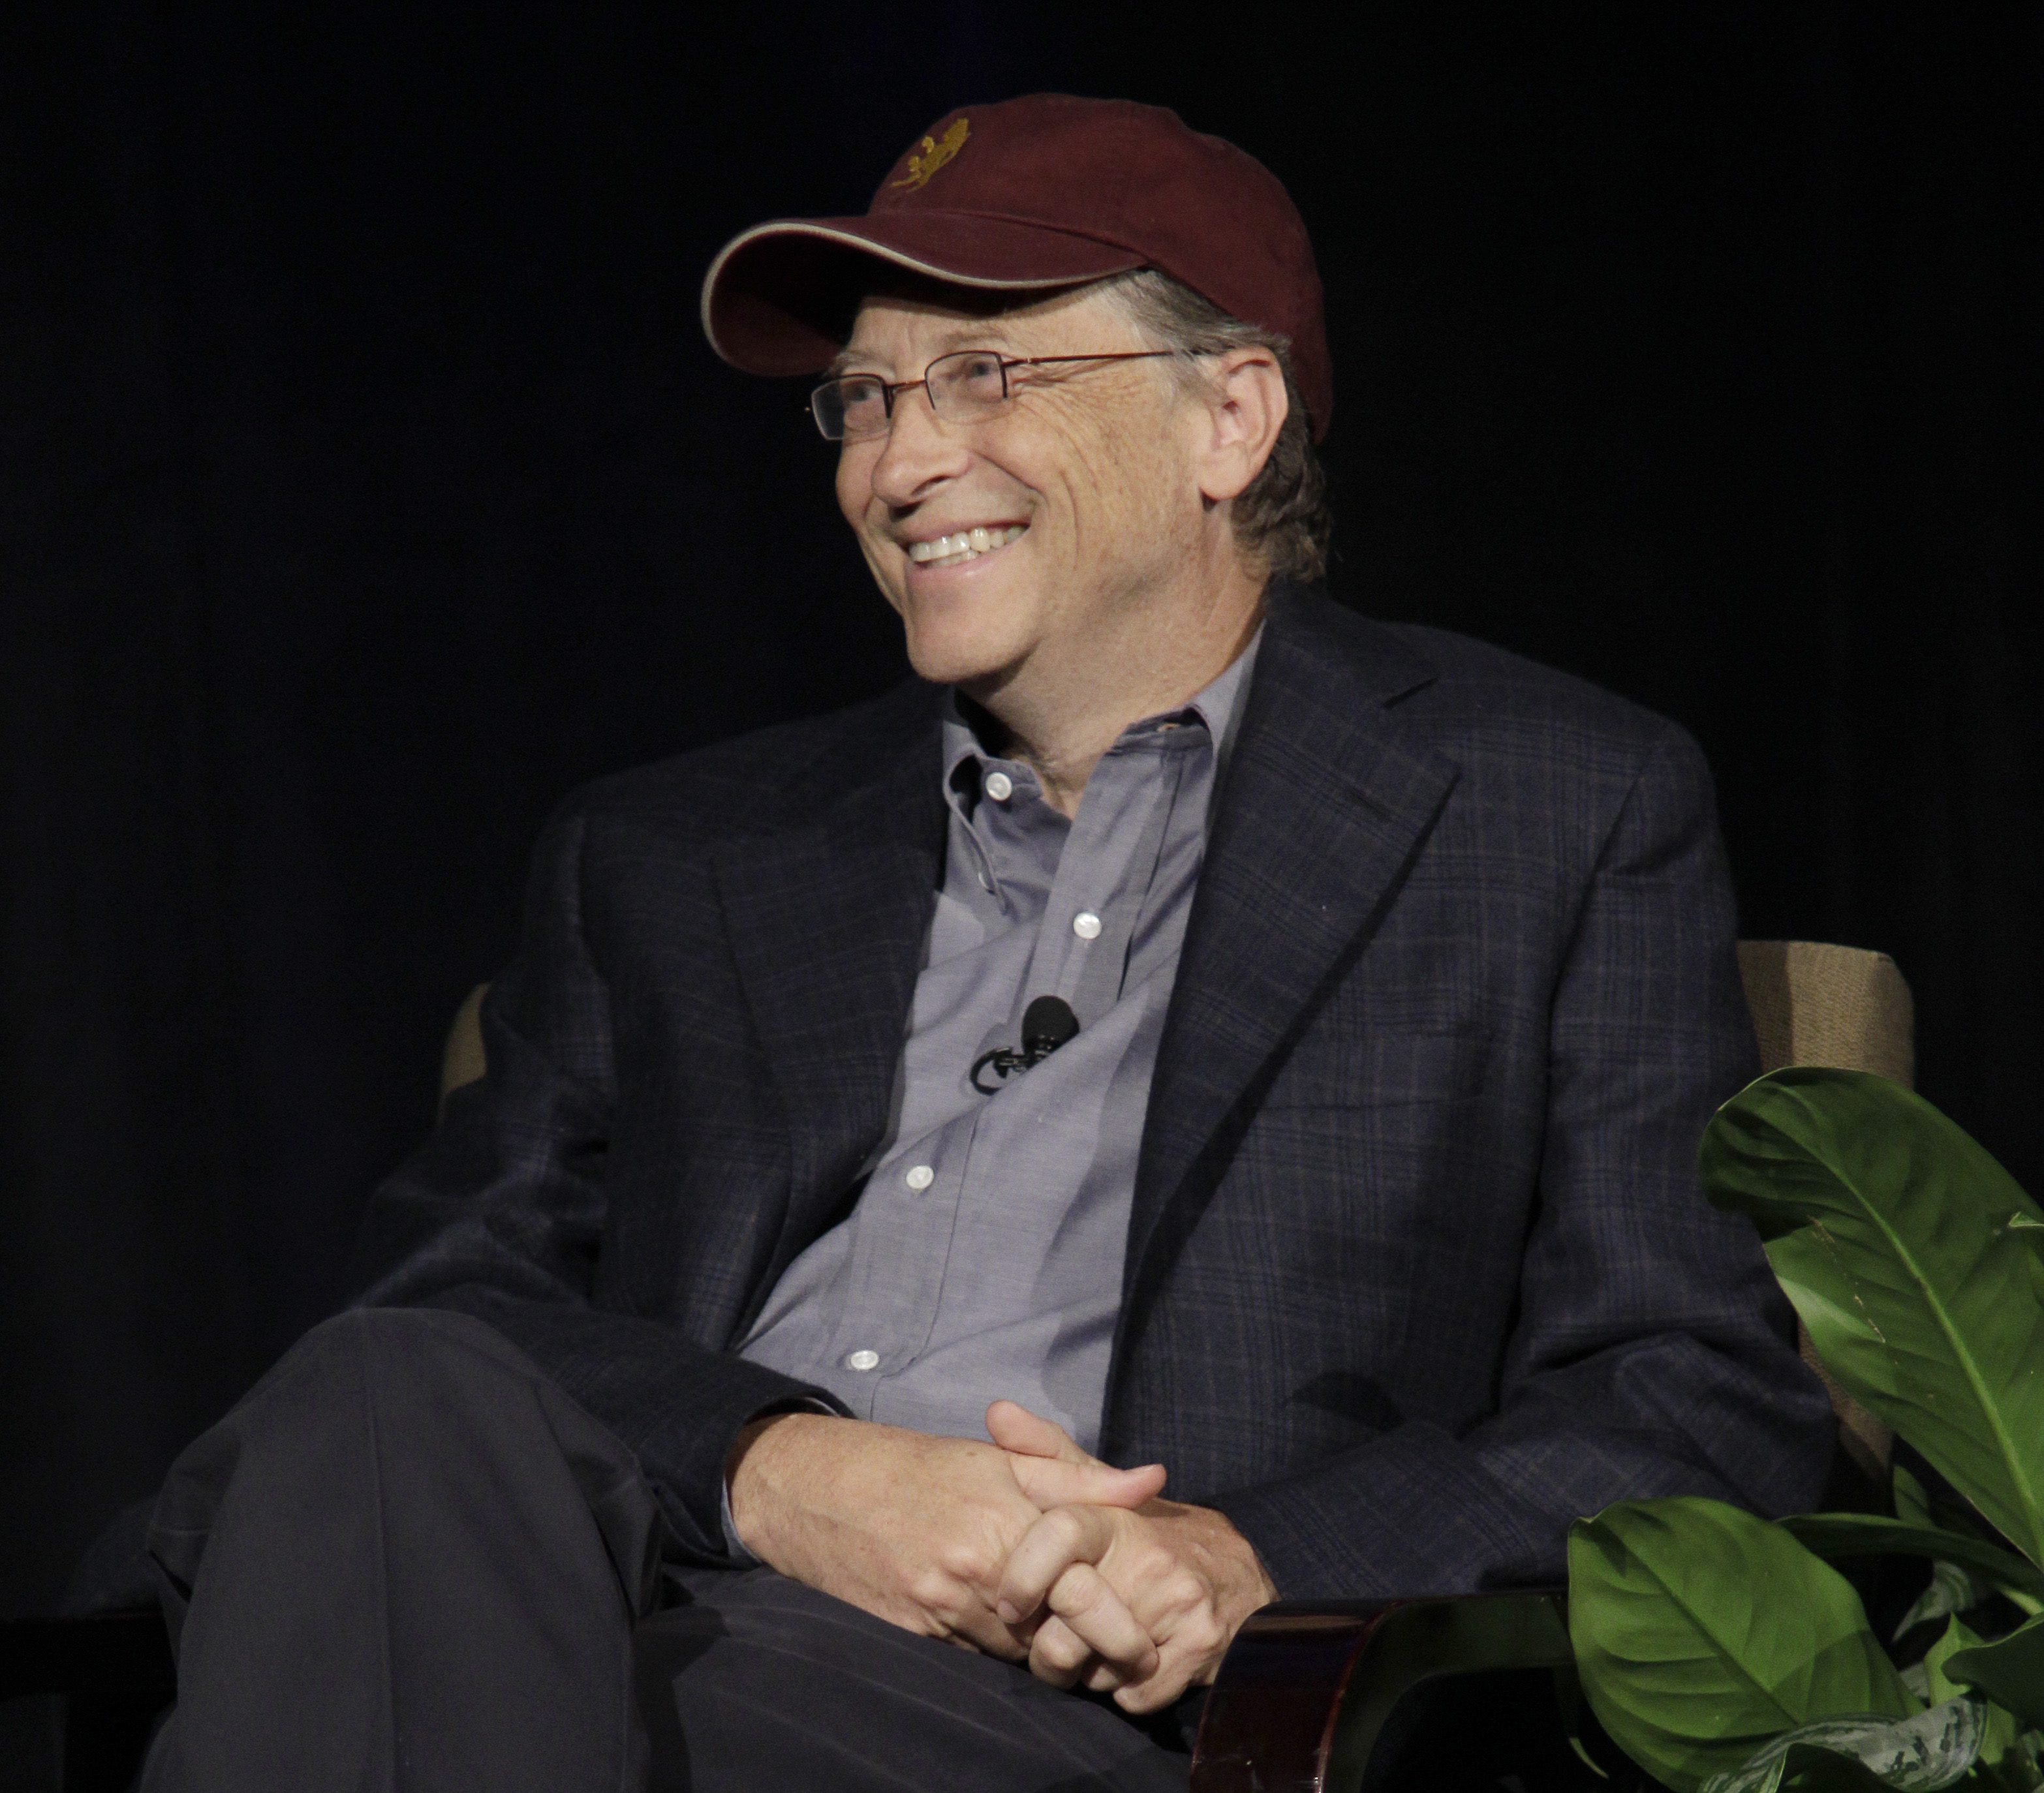 Bill Gates lön - den unge Microsoftanställdes lycka. Åtminstone enligt den nya undersökningen.